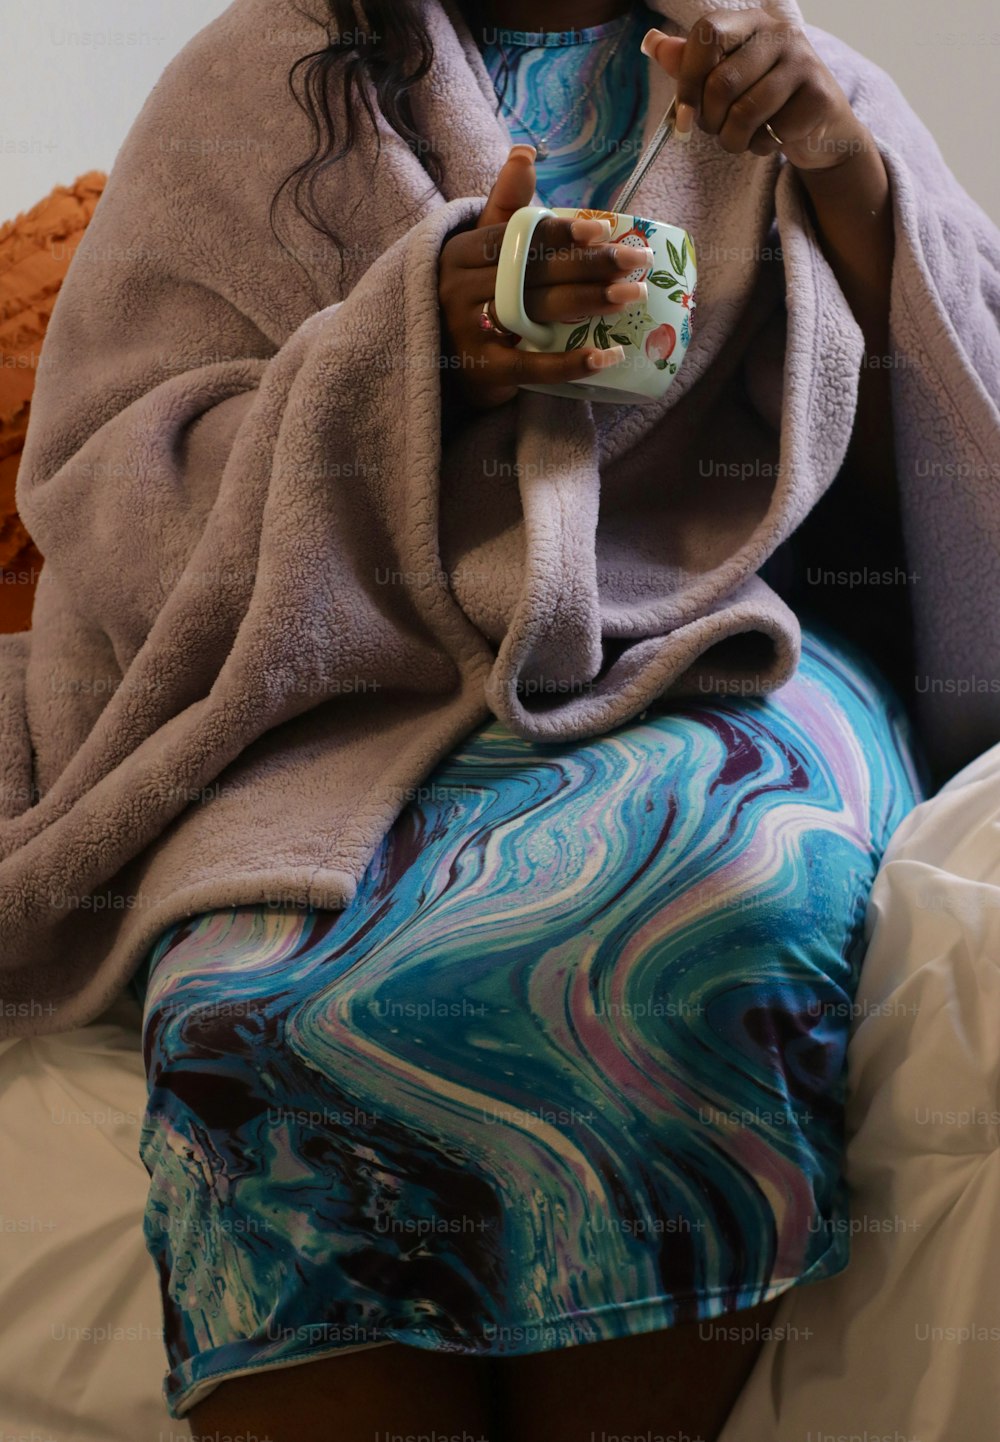 uma mulher sentada em uma cama segurando uma xícara de café